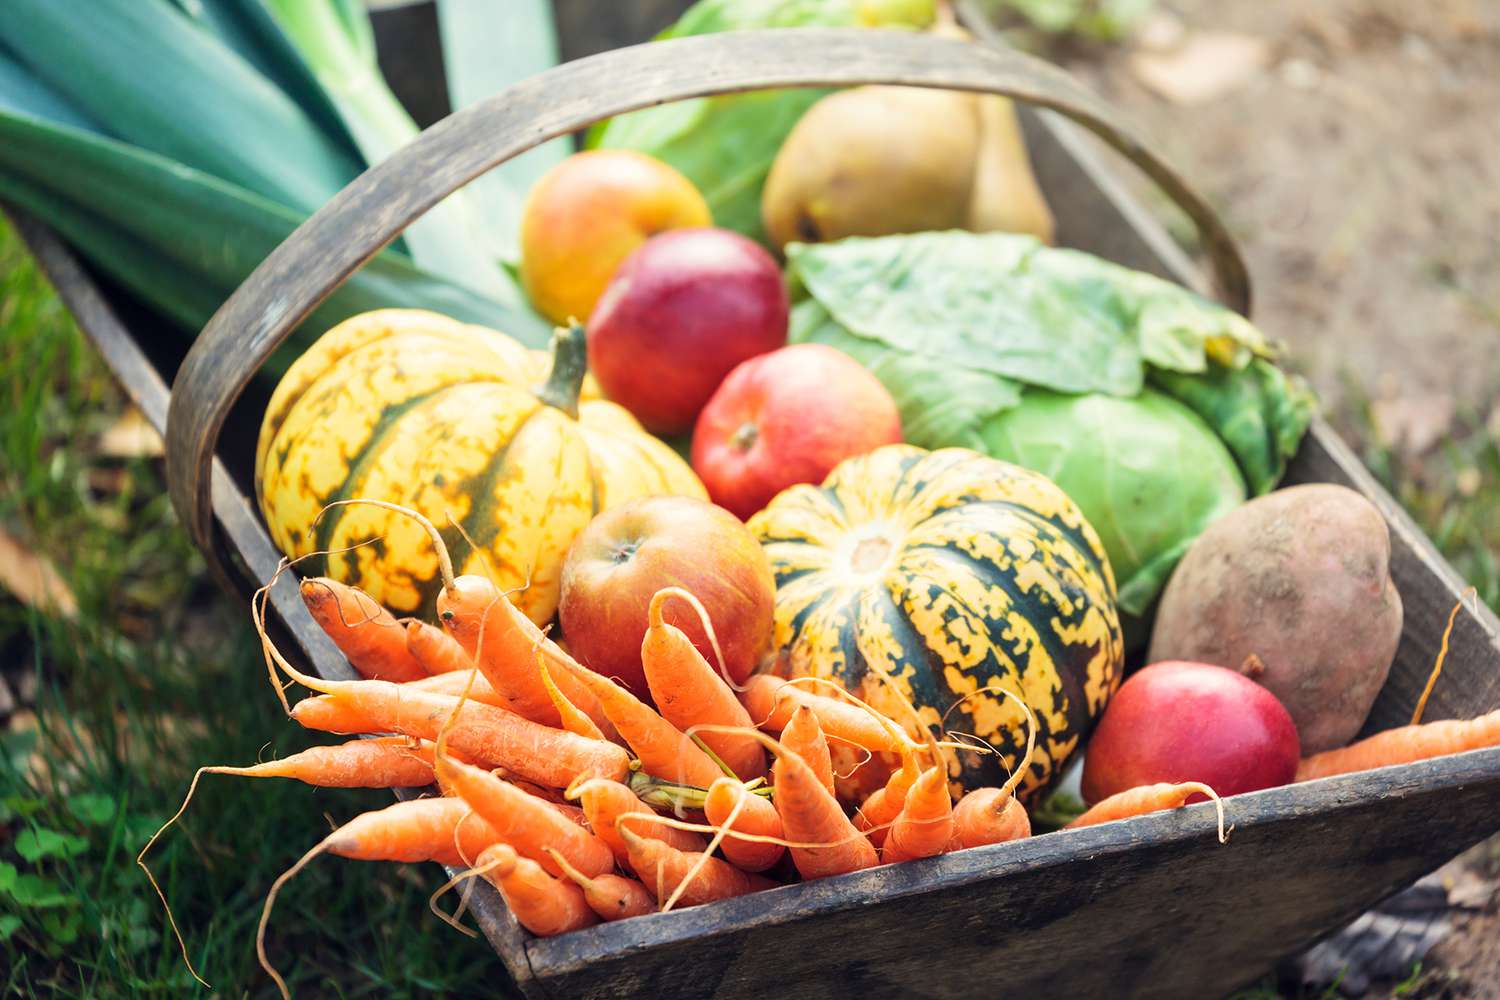 Wooden basket full of fresh, organic vegetables